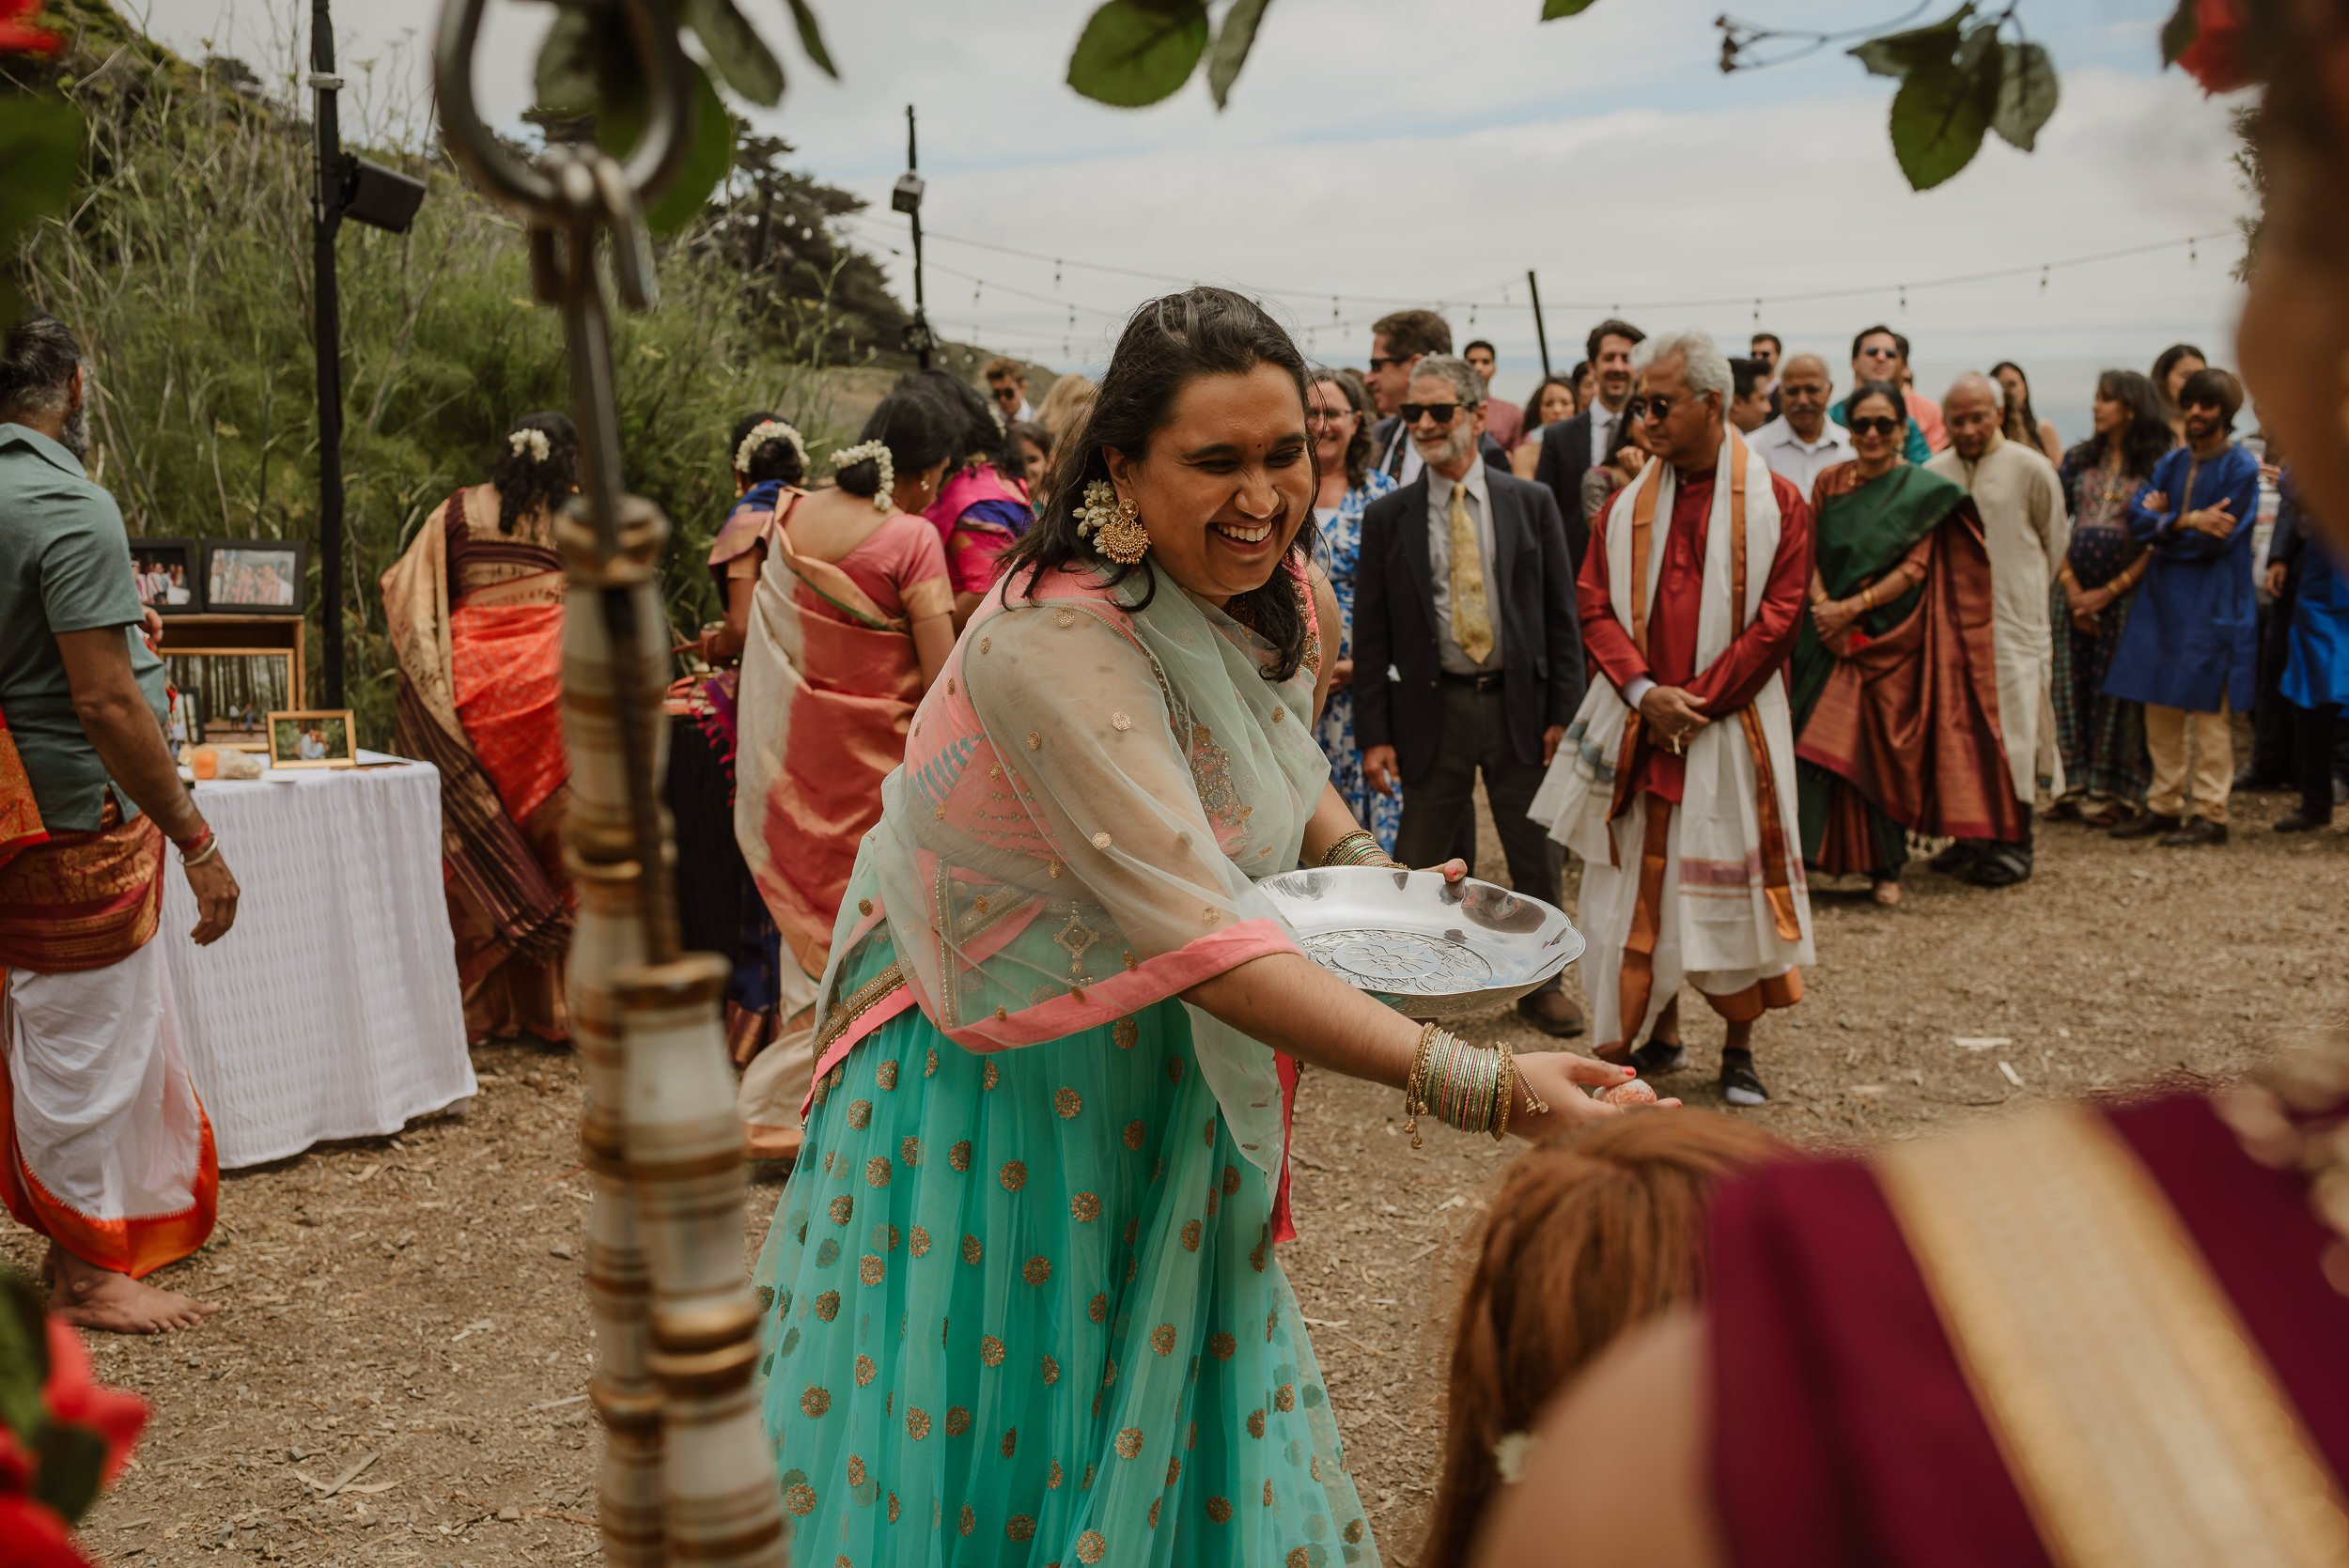 077-multicultural-hindu-indian-slide-ranch-wedding-muir-beach-vivianchen-0721.jpg